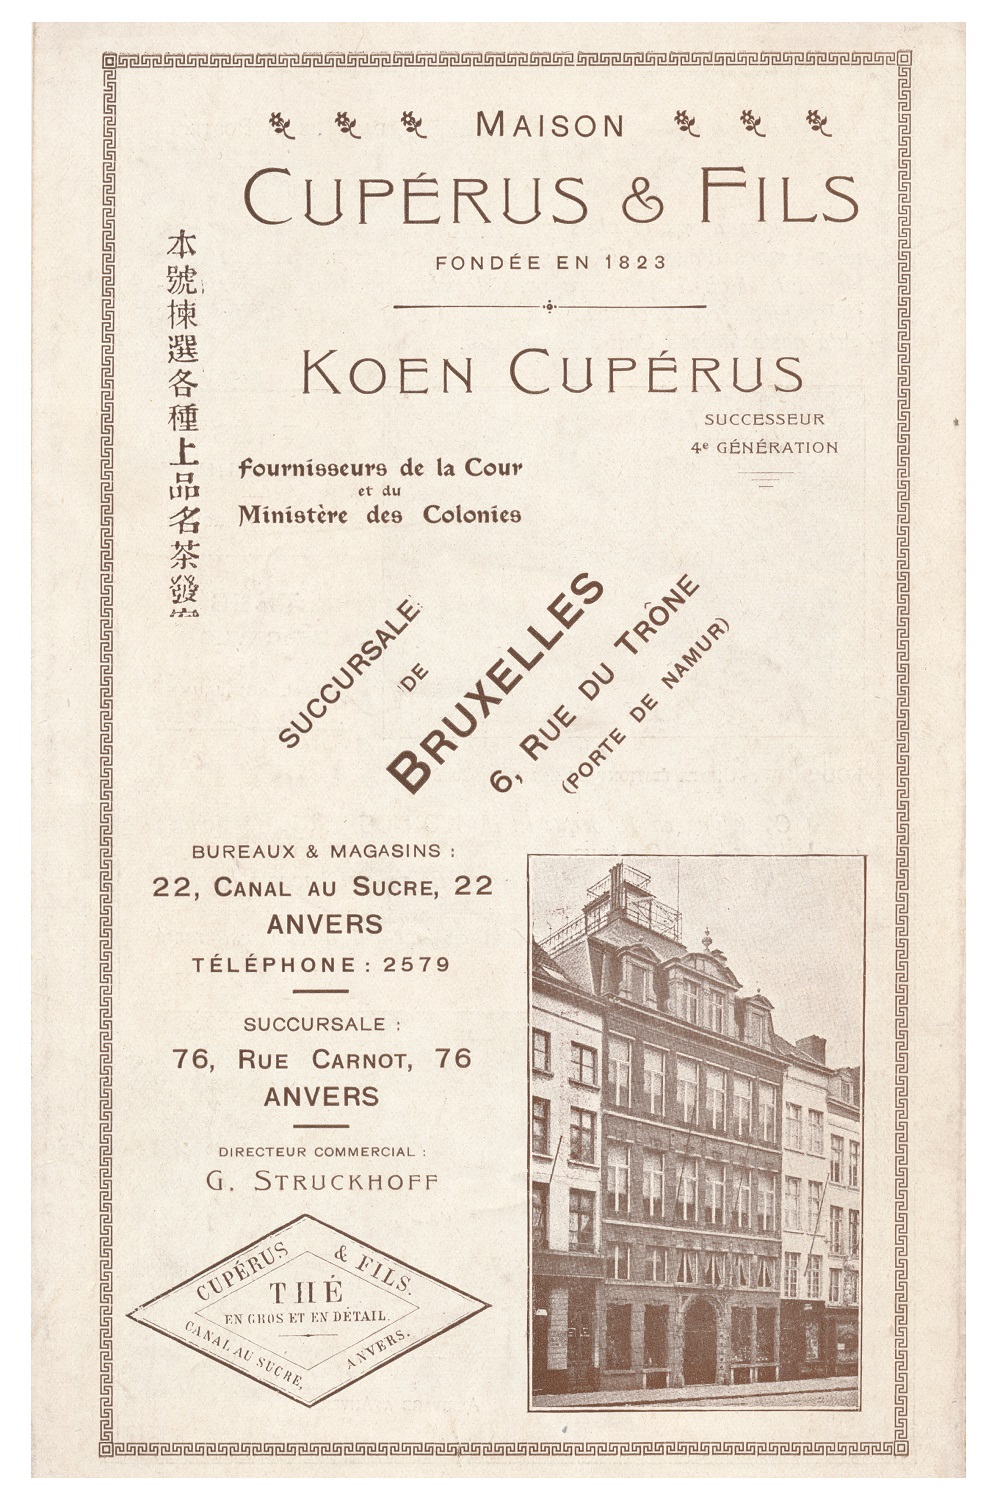 Collectie Cuperus Koffie & Thee, Antwerpen.